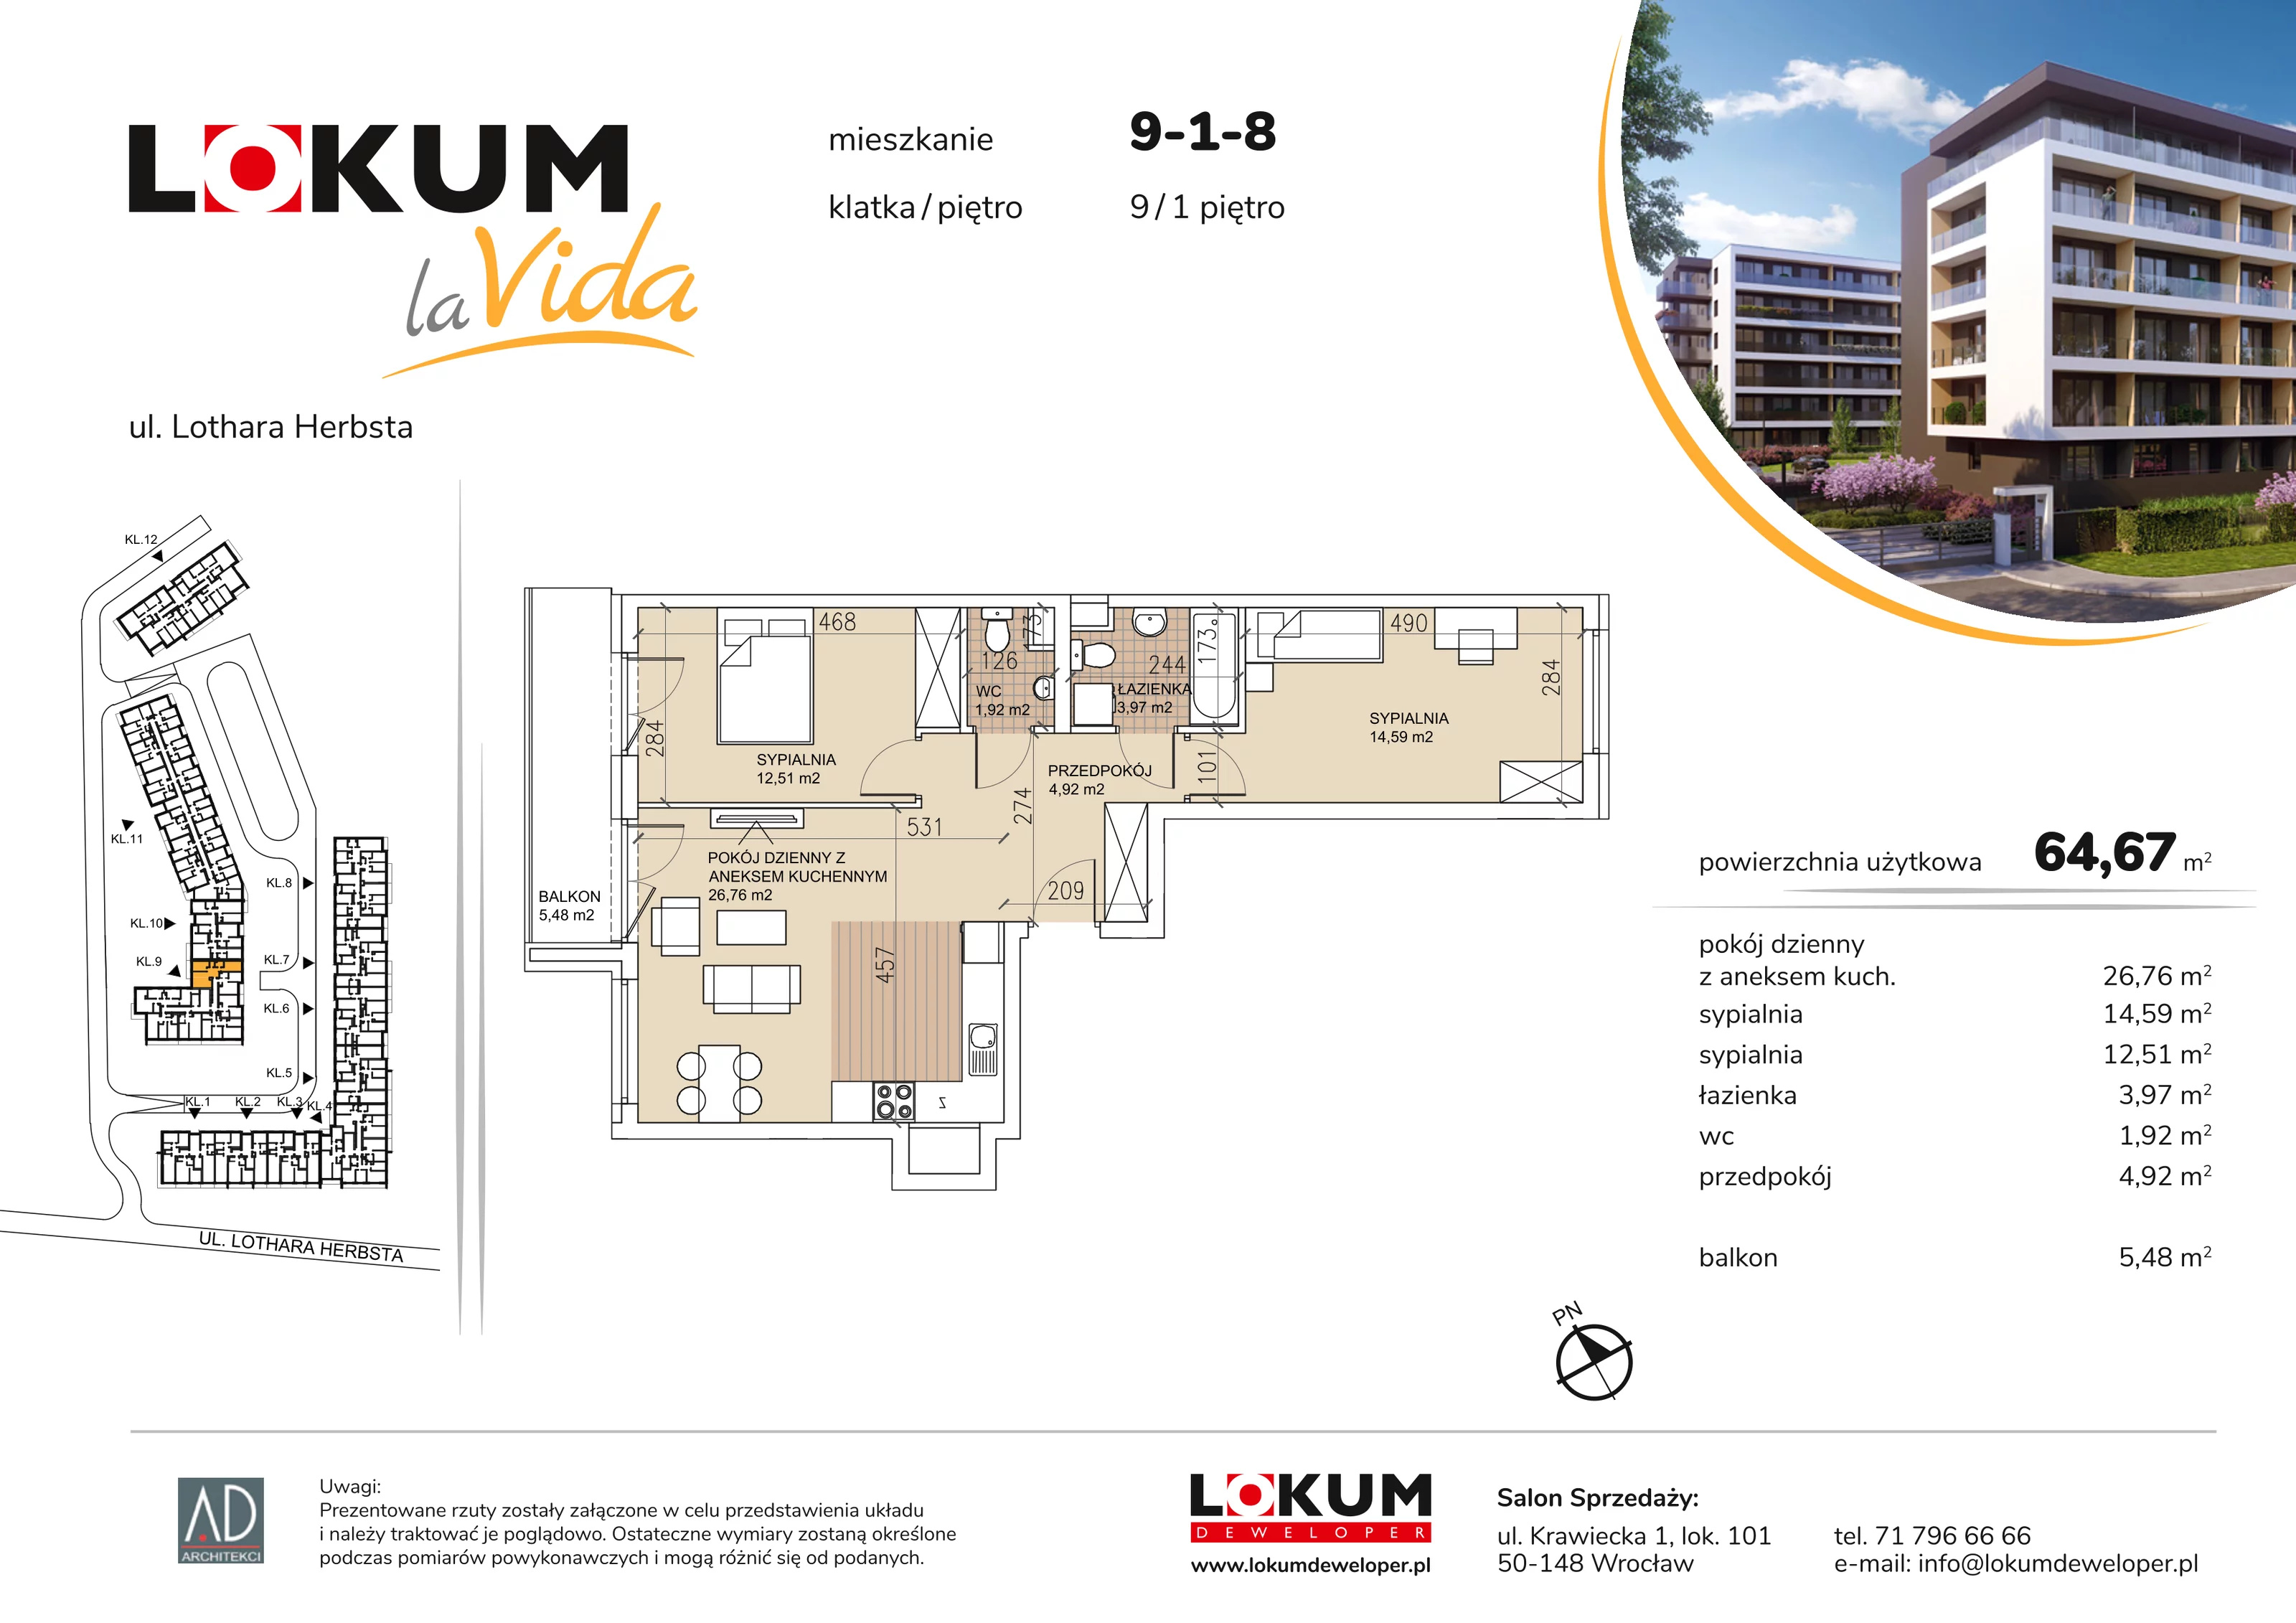 Mieszkanie 64,67 m², piętro 1, oferta nr 9-1-8, Lokum la Vida, Wrocław, Sołtysowice, ul. Lothara Herbsta